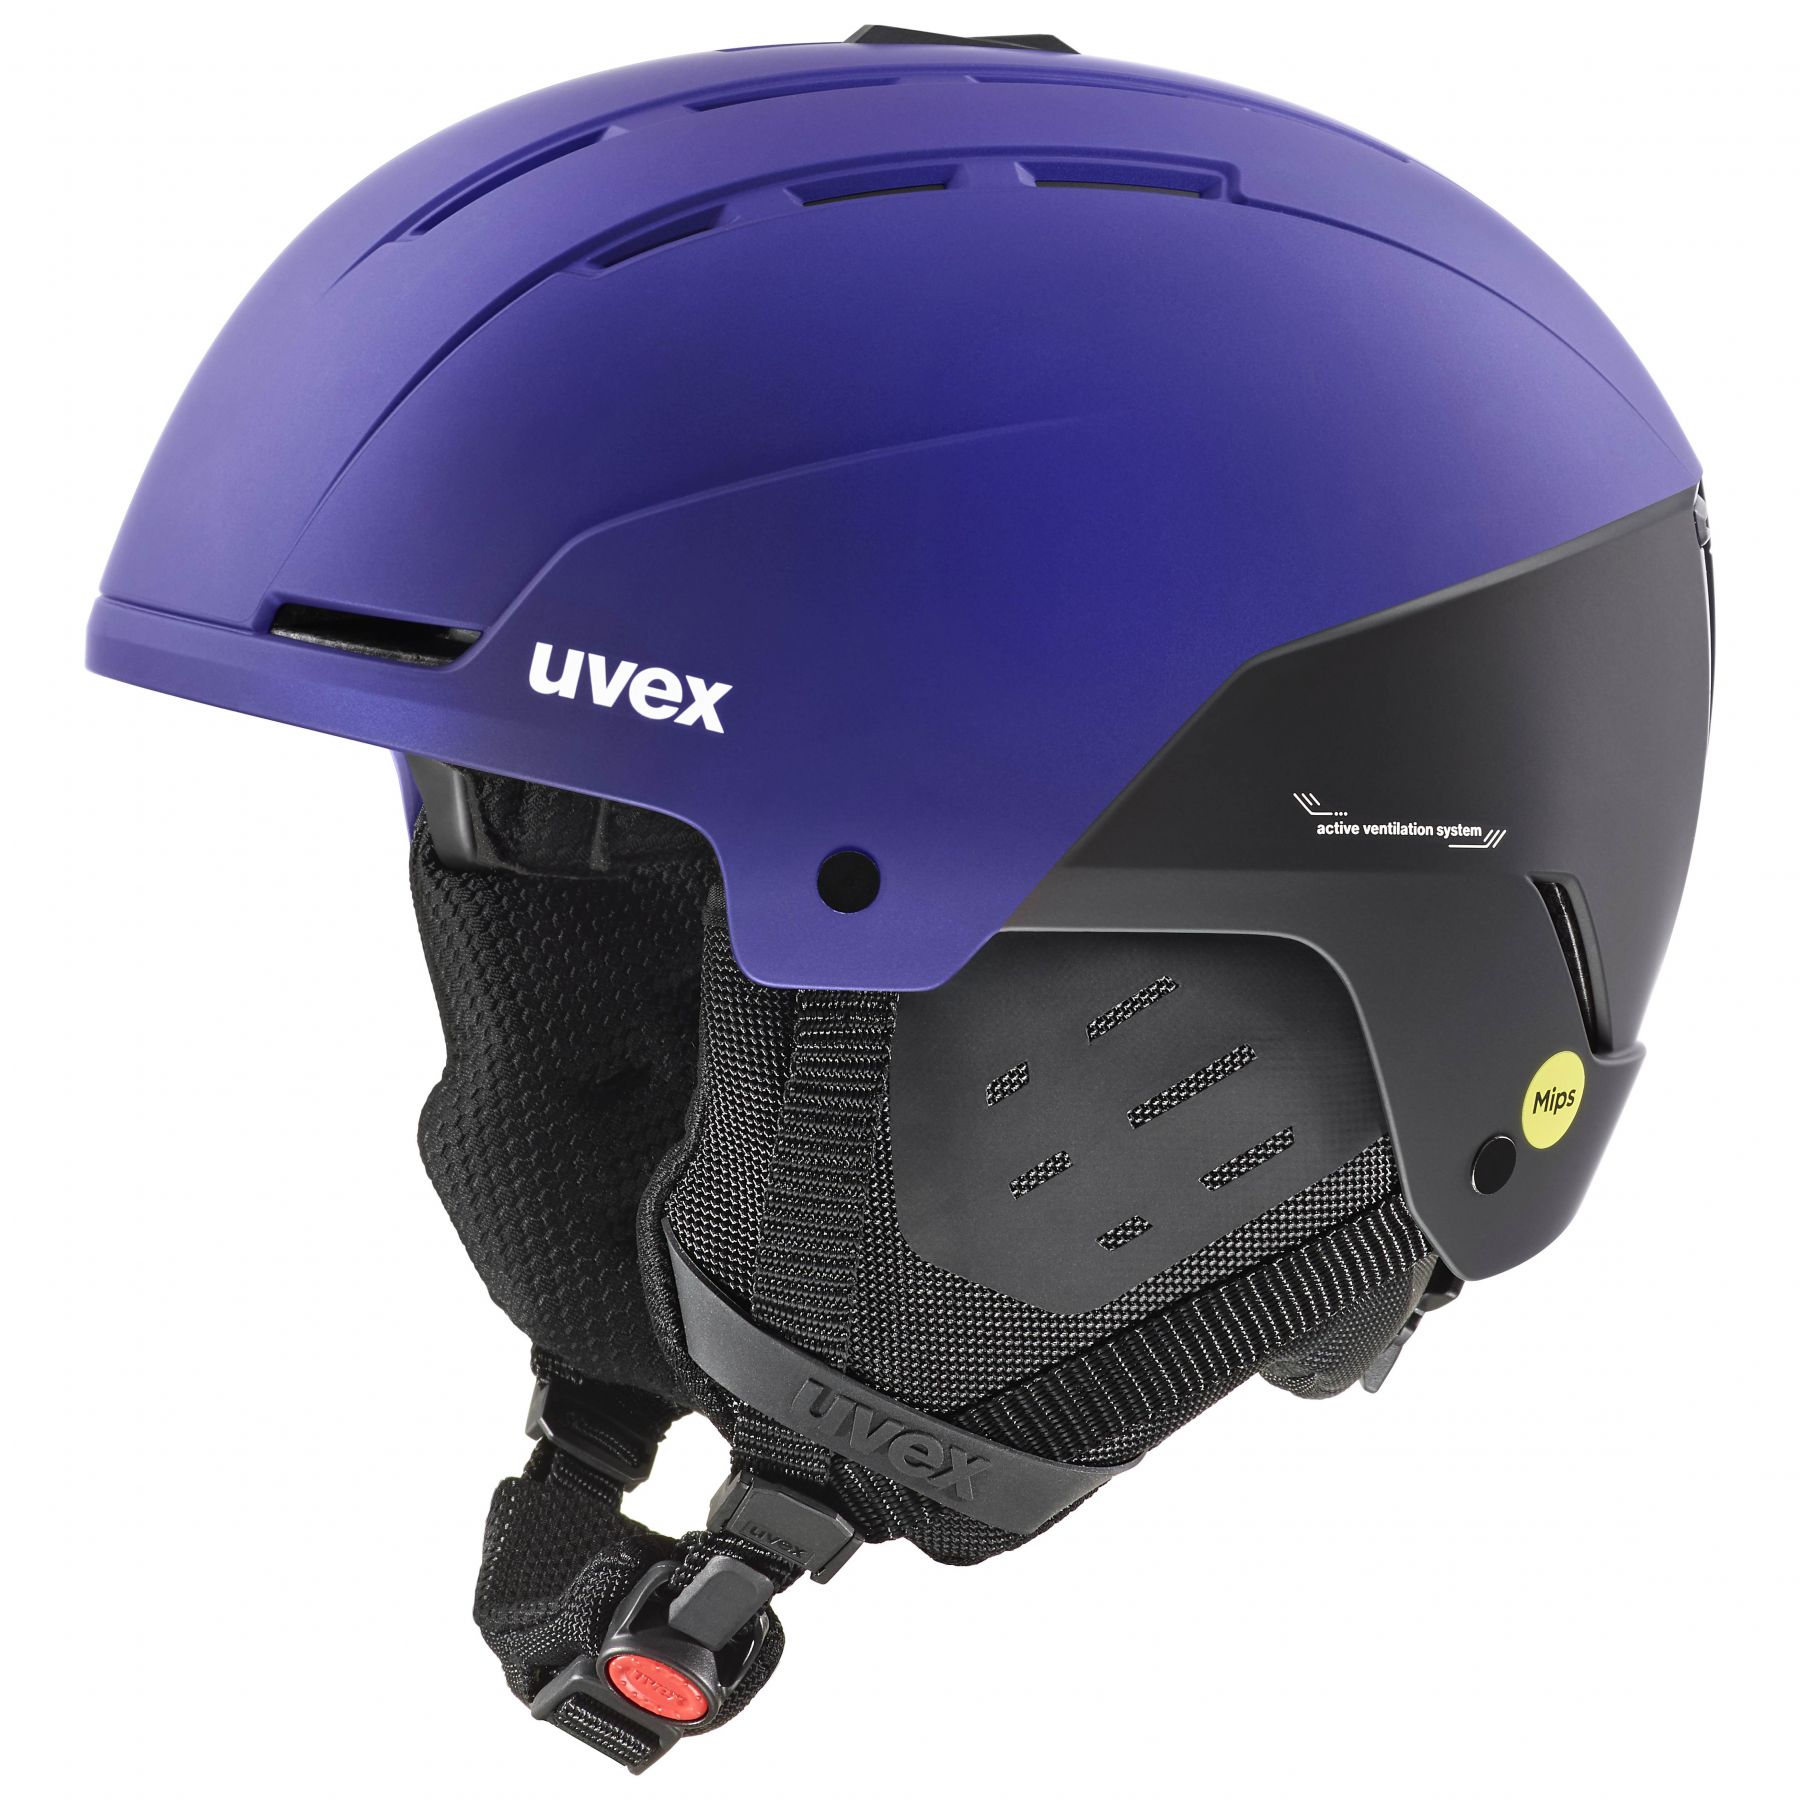 Brug Uvex Stance MIPS, skihjelm, lilla/sort til en forbedret oplevelse